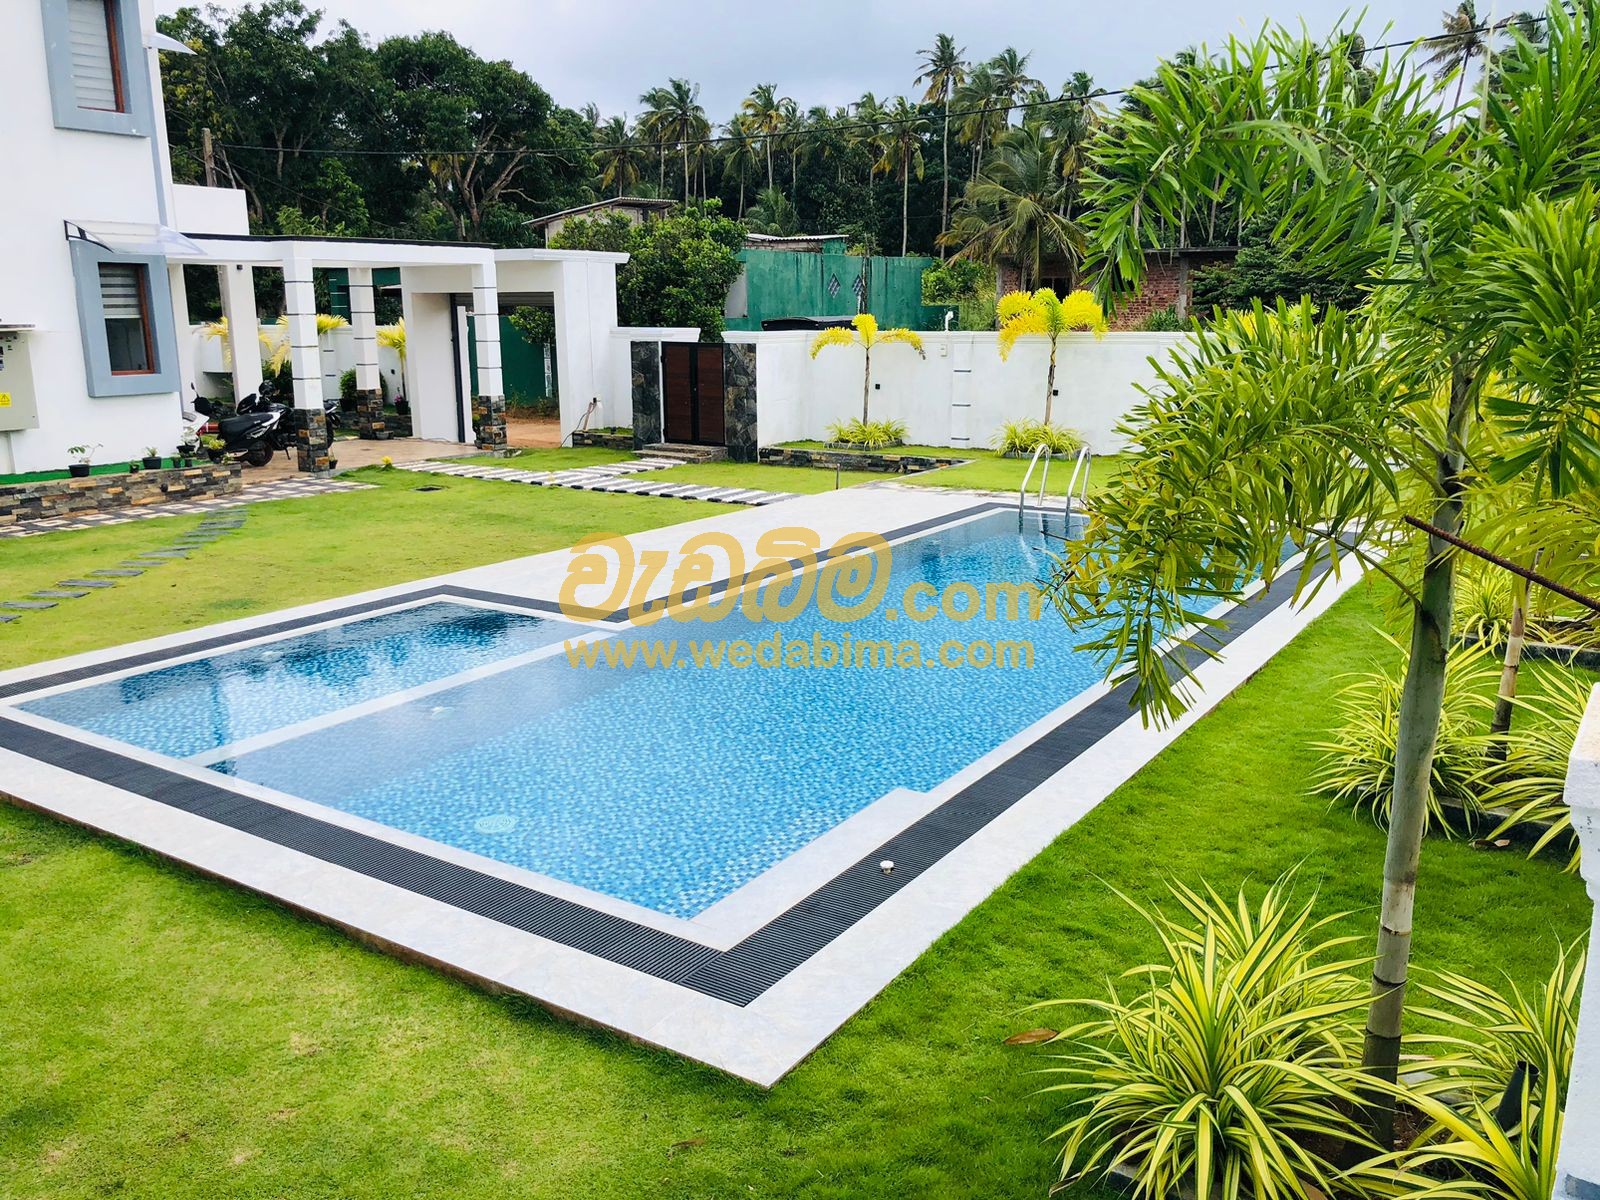 Cover image for landscaping price in sri lanka